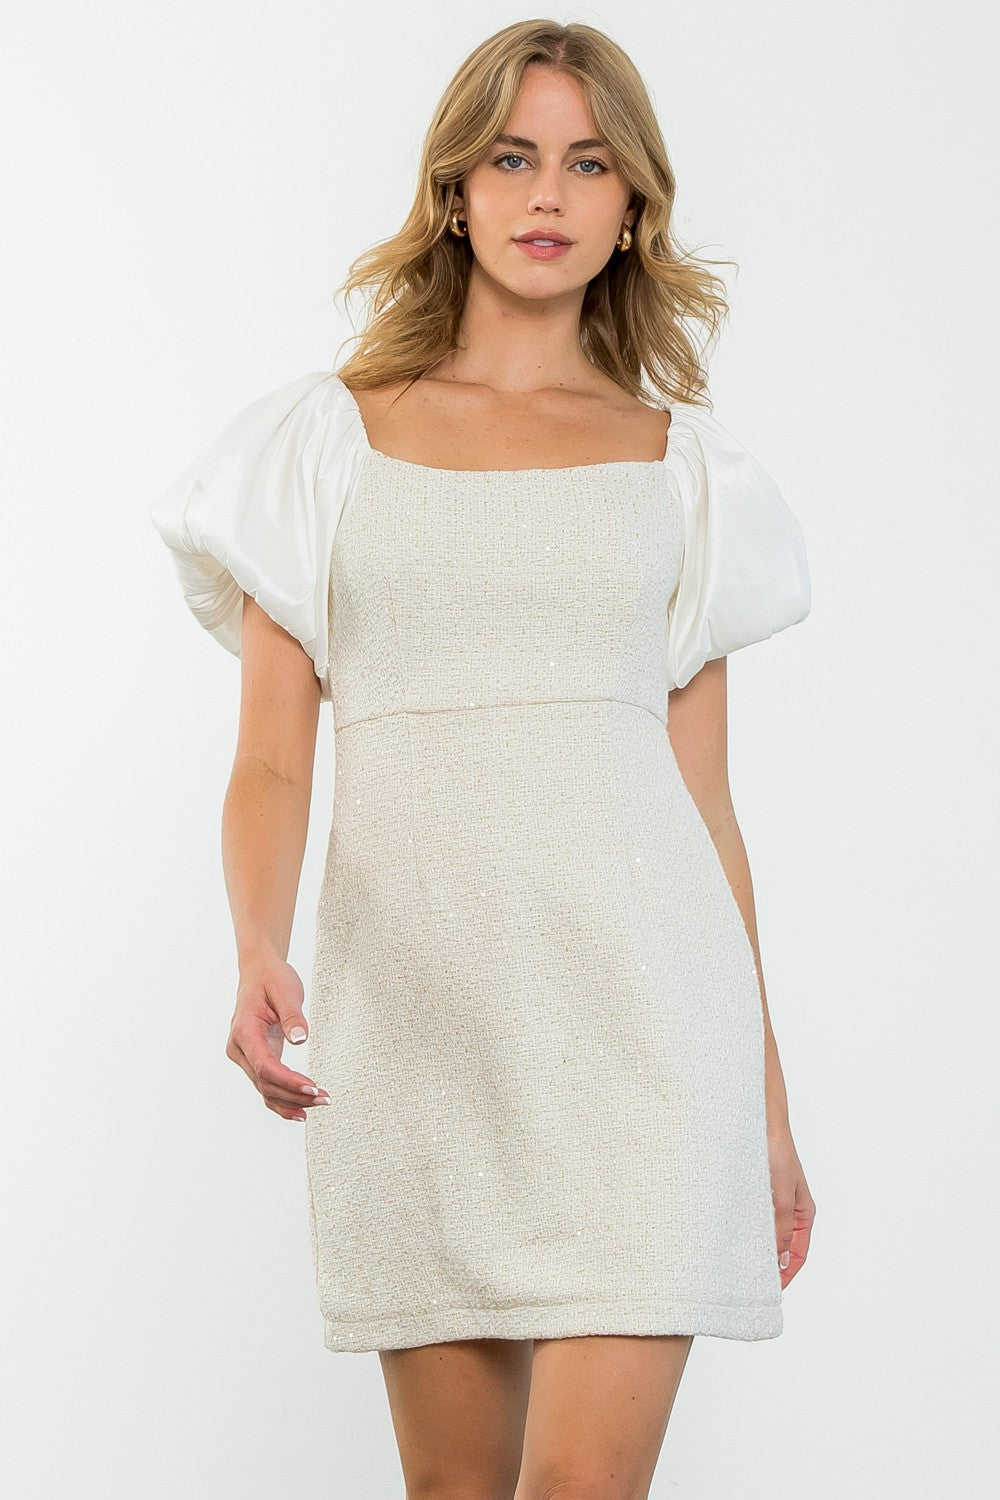 Kaylin Tweed Dress